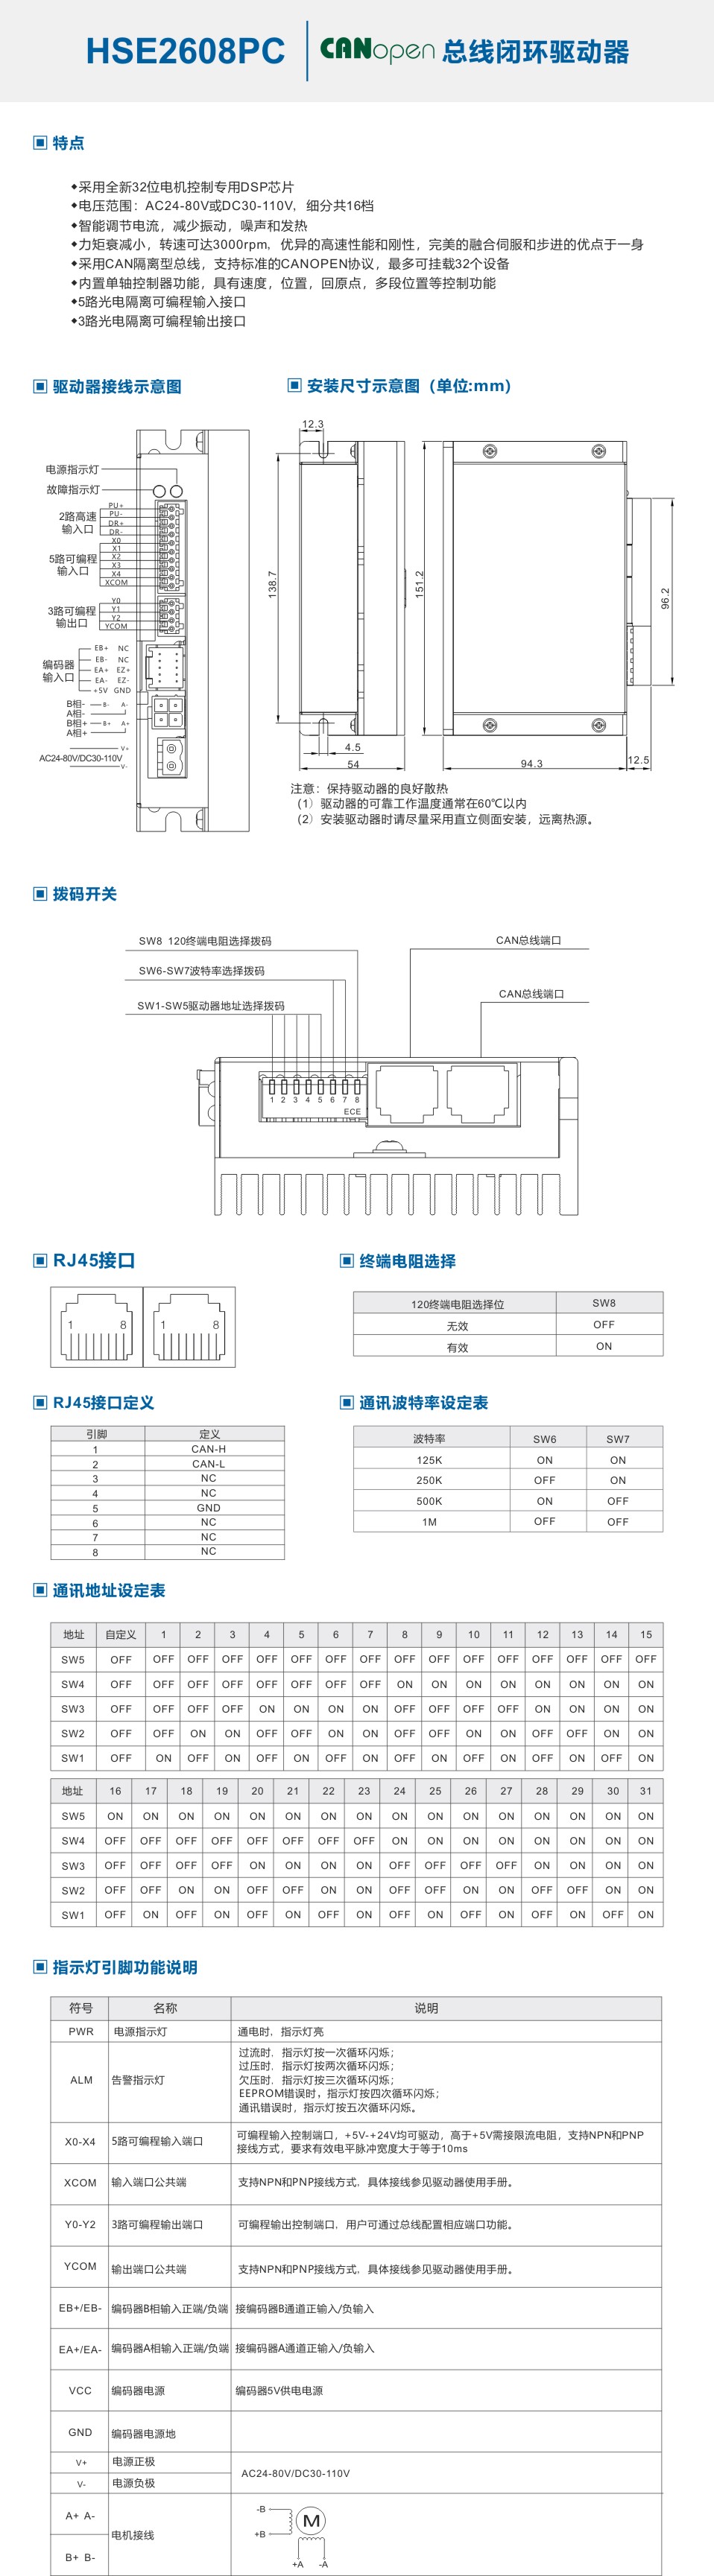 HSE2608PC-中文.jpg